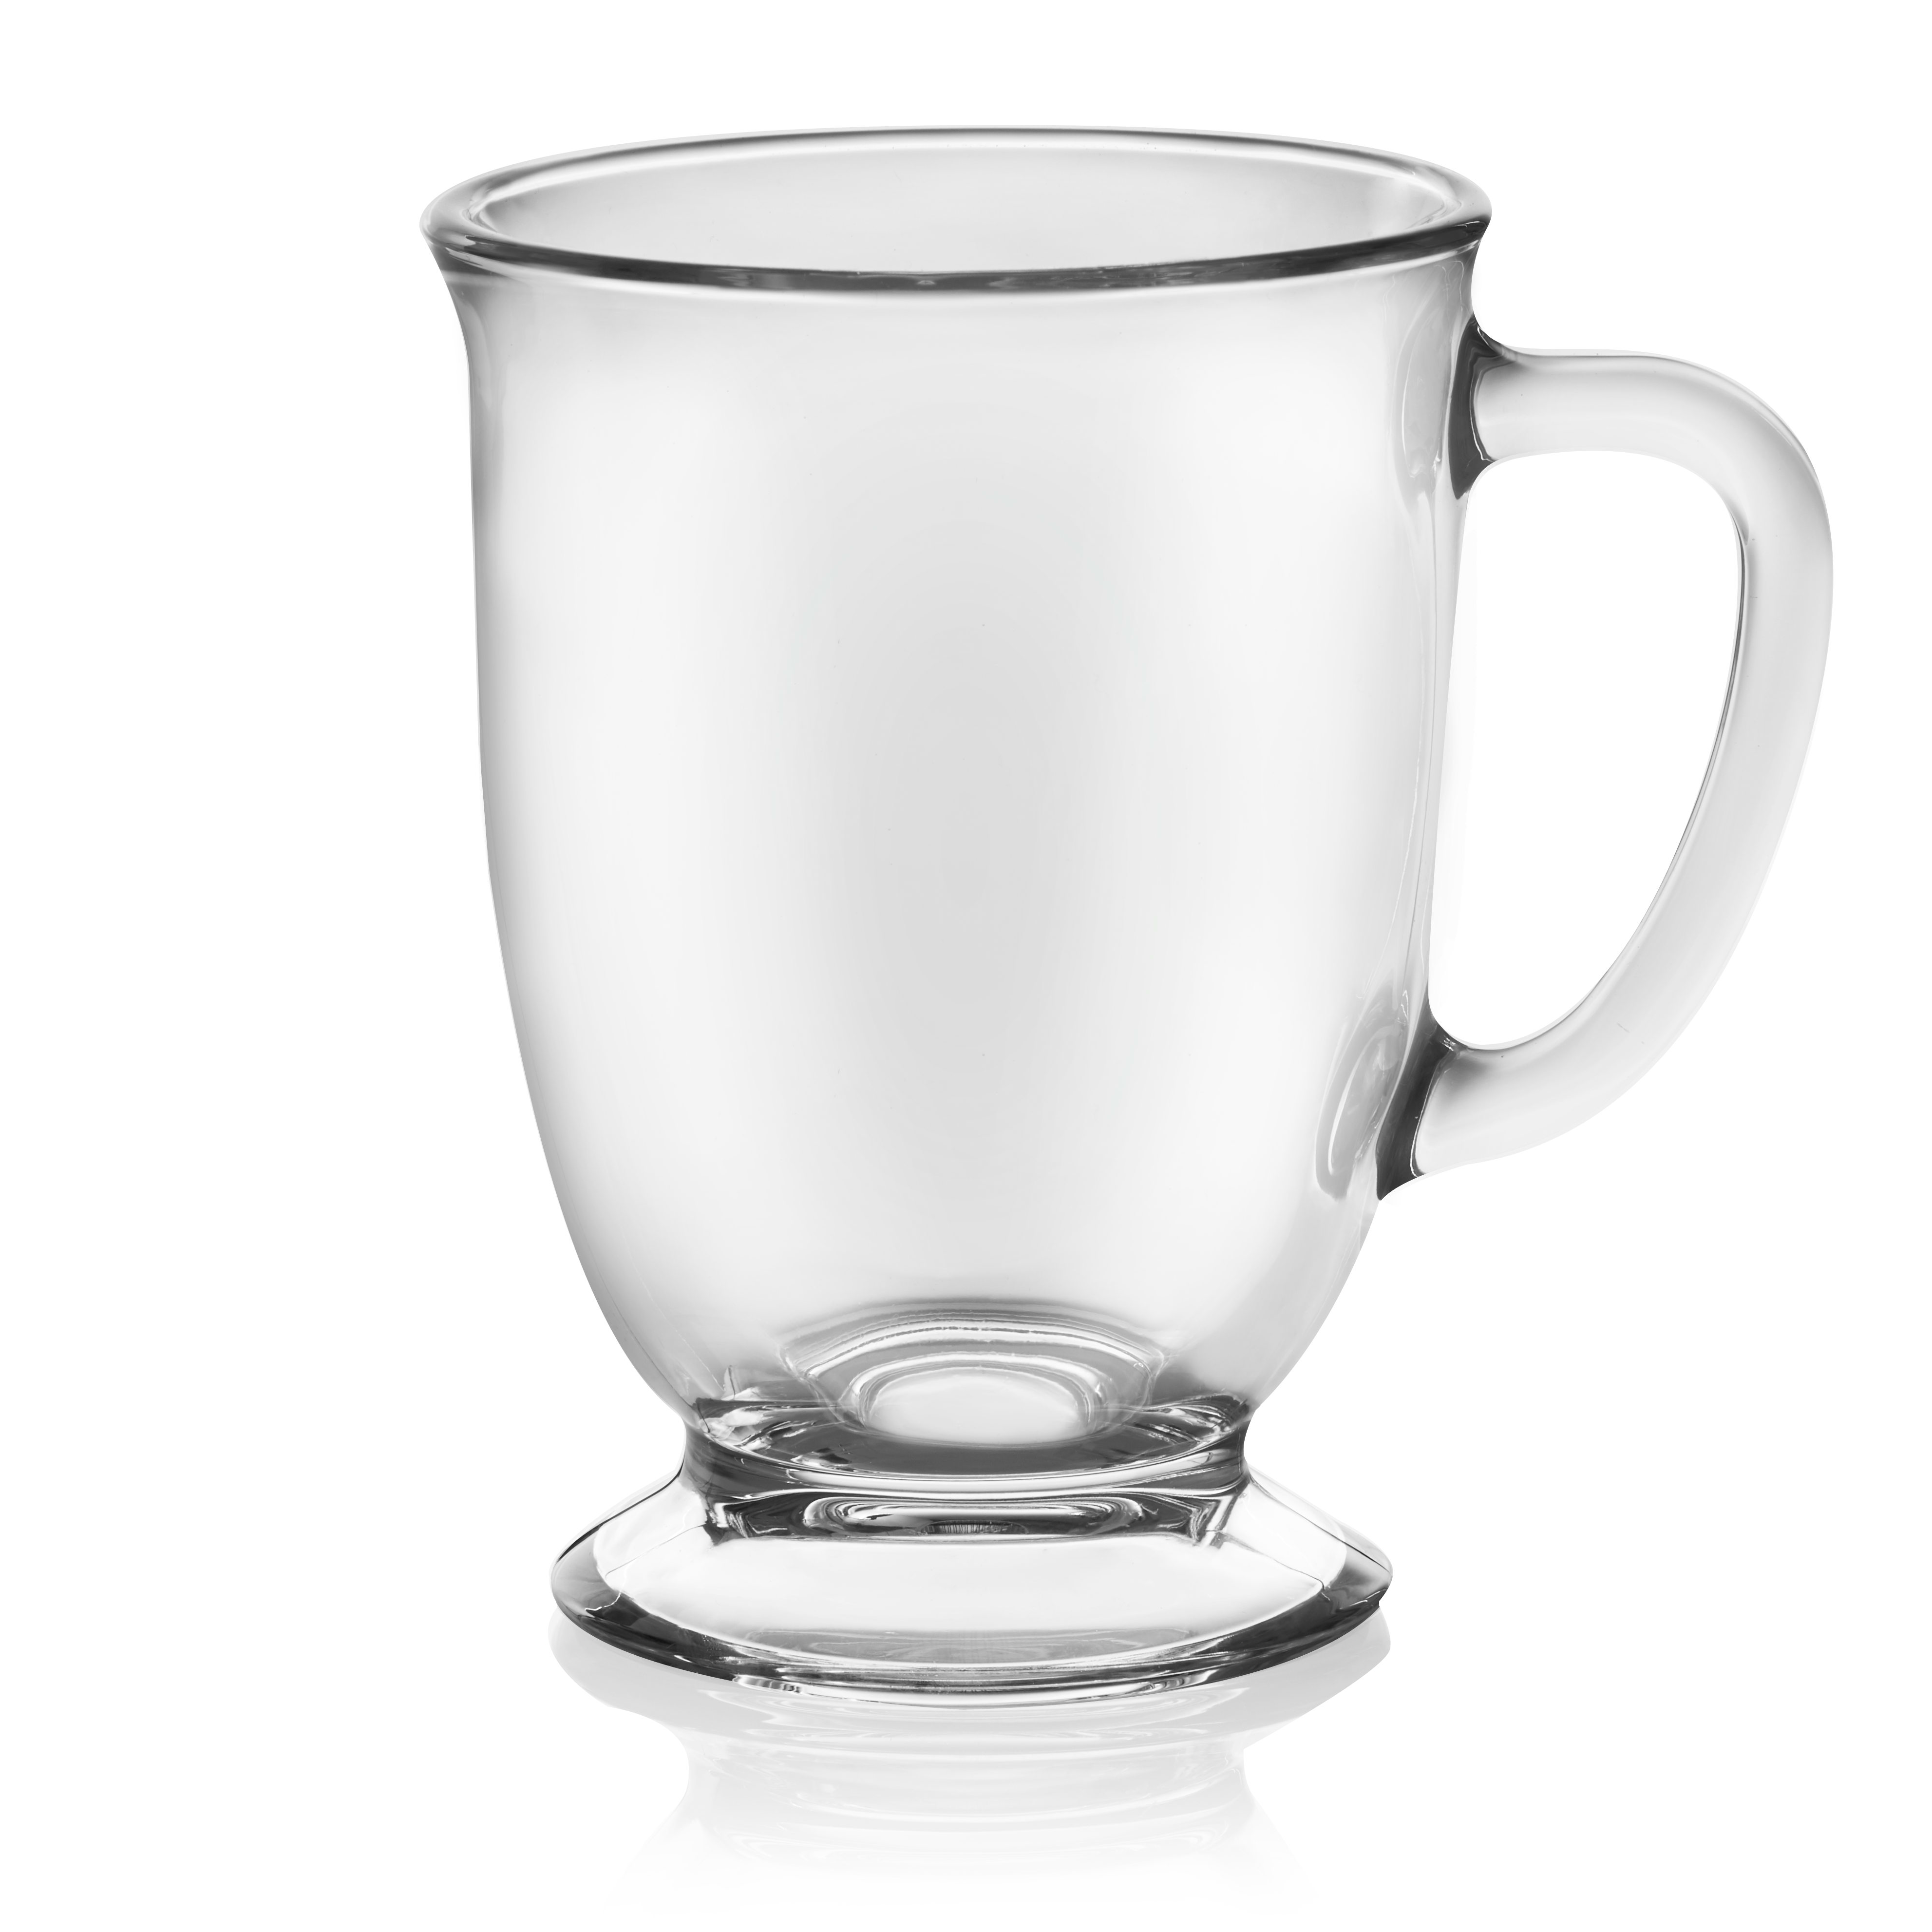 Libbey Kona Glass Coffee Mugs, 16-ounce, Set of 6 - image 5 of 5